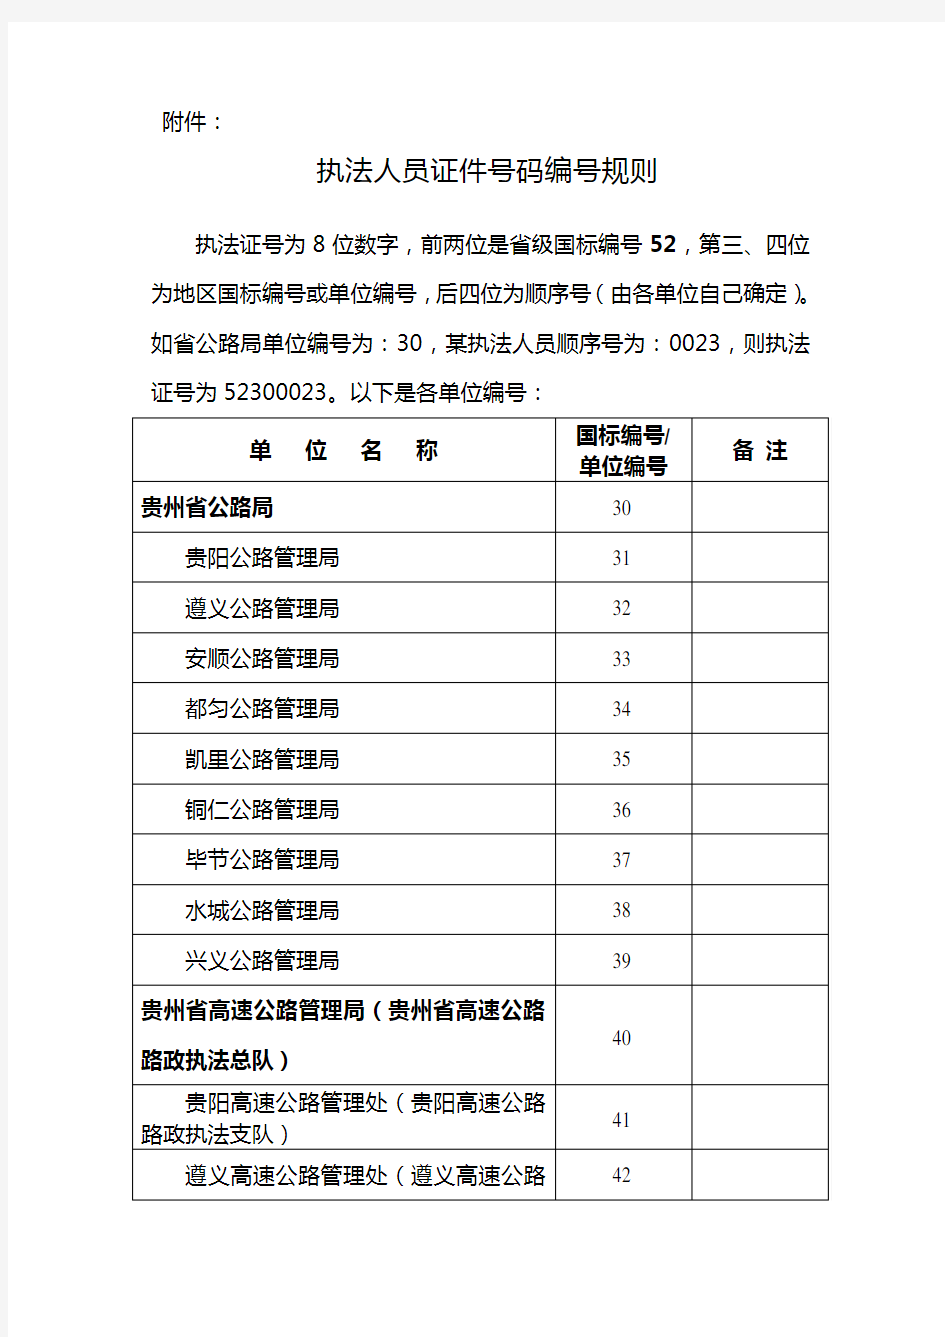 执法人员证件号码编号规则 - 贵州省交通运输厅